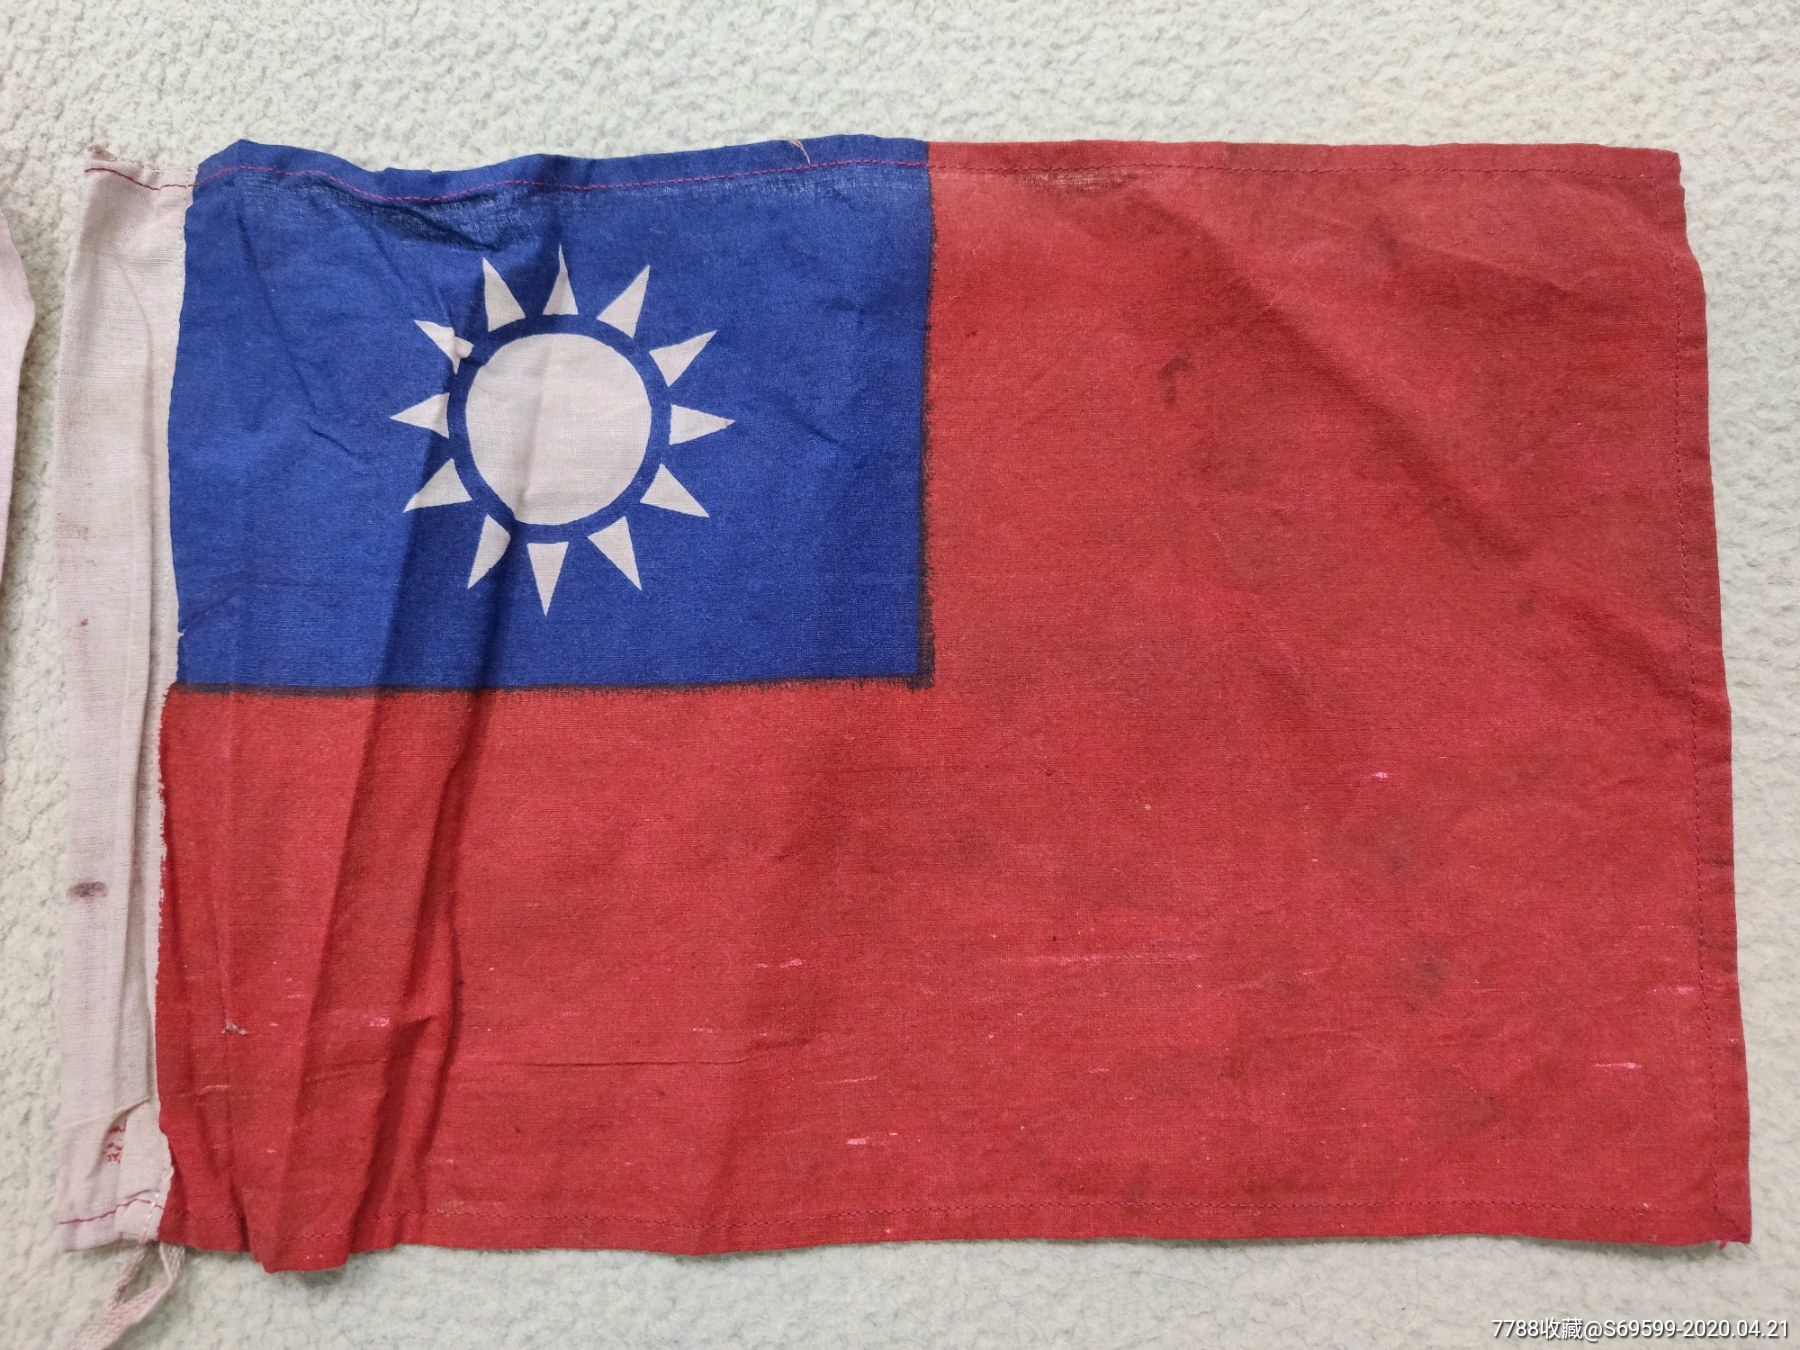 国民革命的旗帜图片